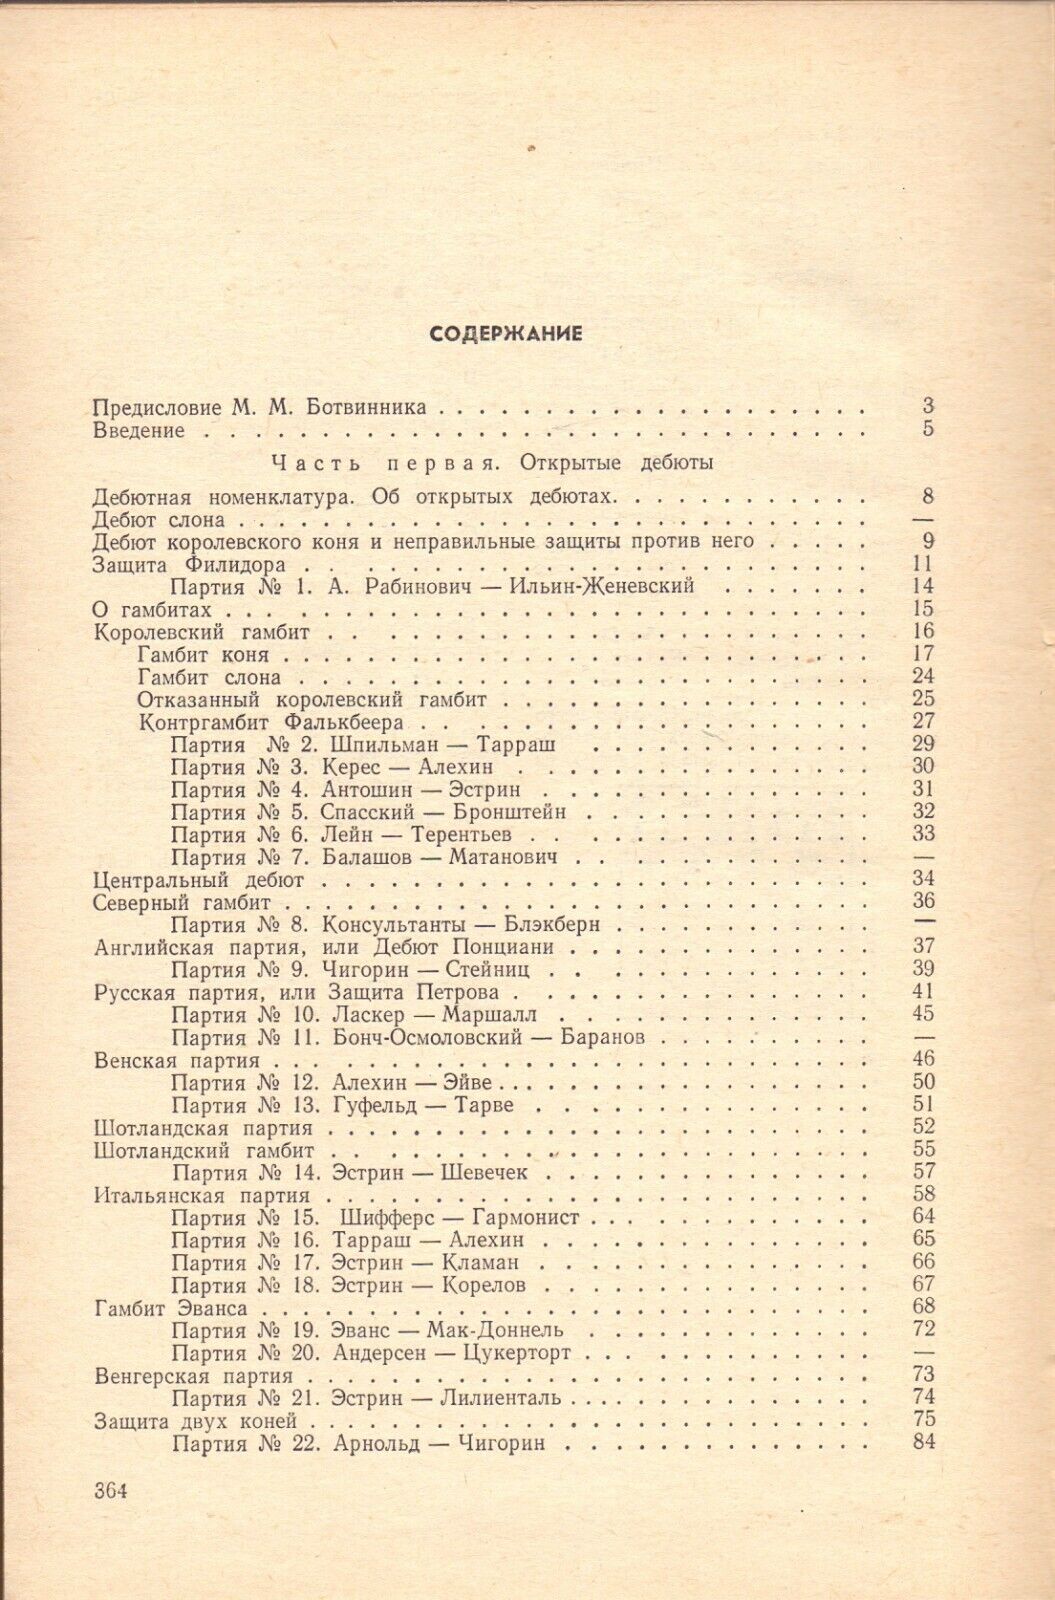 11016.Chess Book signed by Bronstein, Taimanov, Gulko, Savon, Kuzmin, Vasyukov, Gufeld